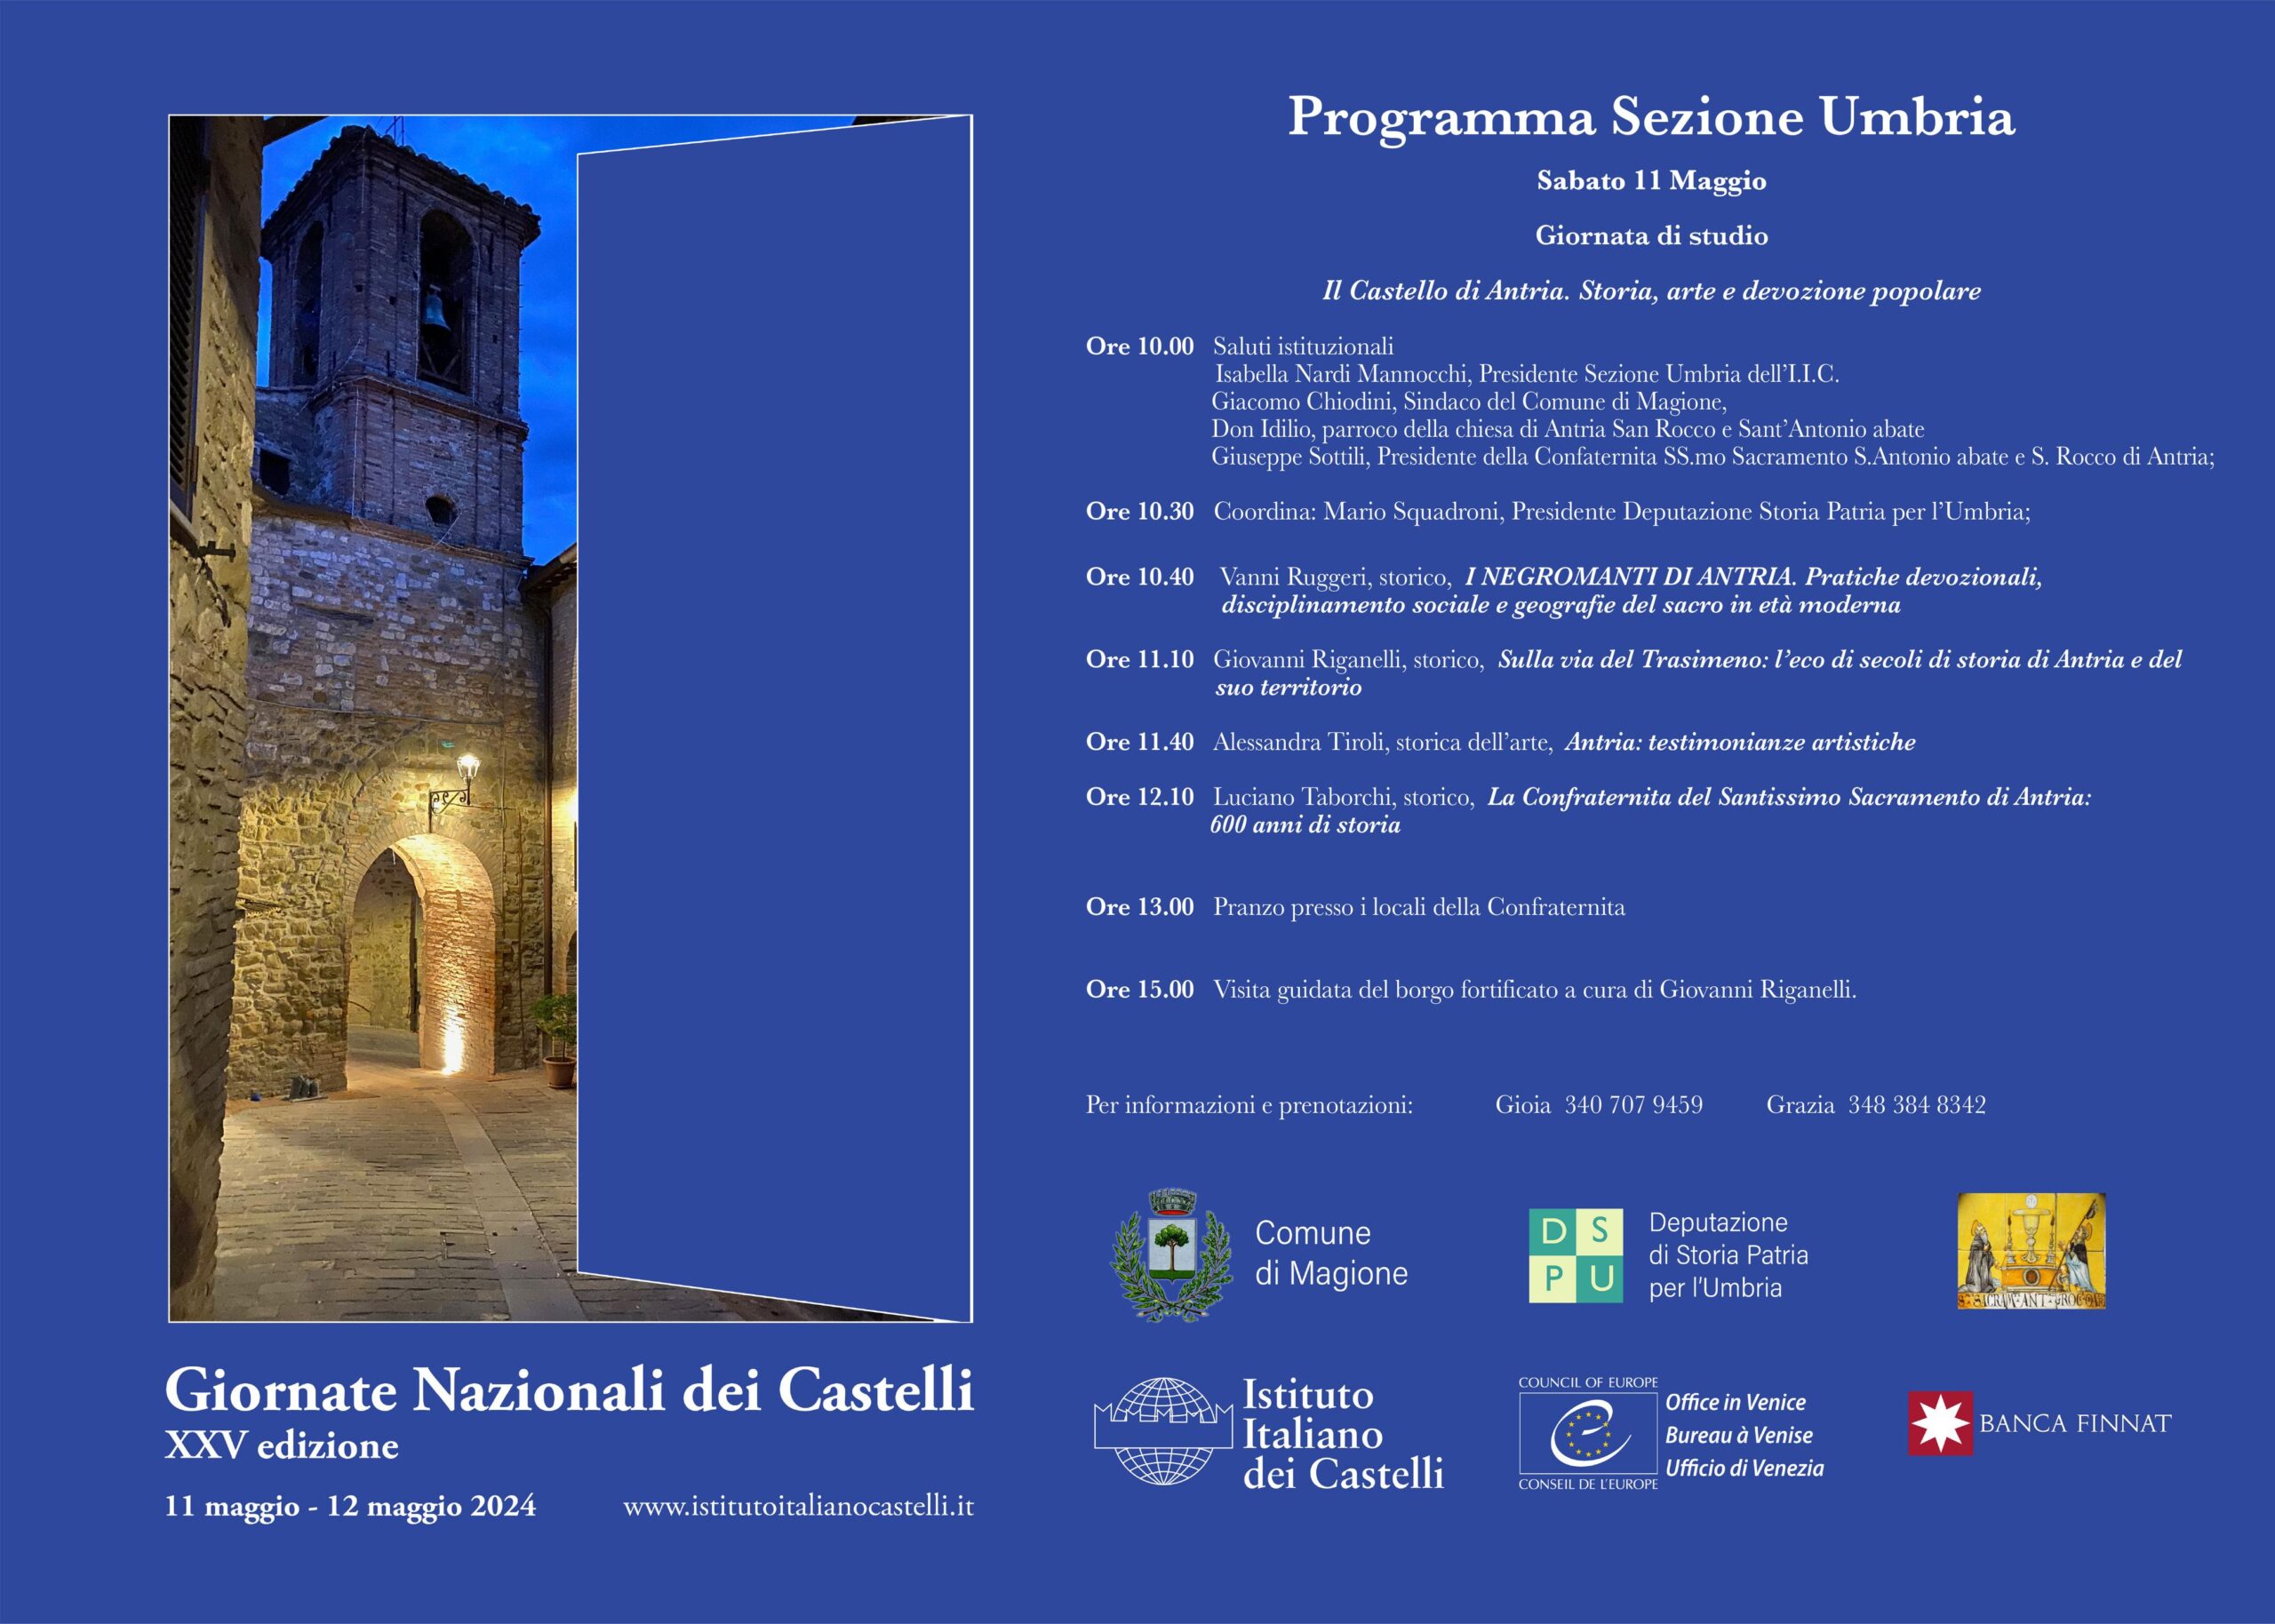 Giornata Nazionale dei Castelli 2024 – Umbria